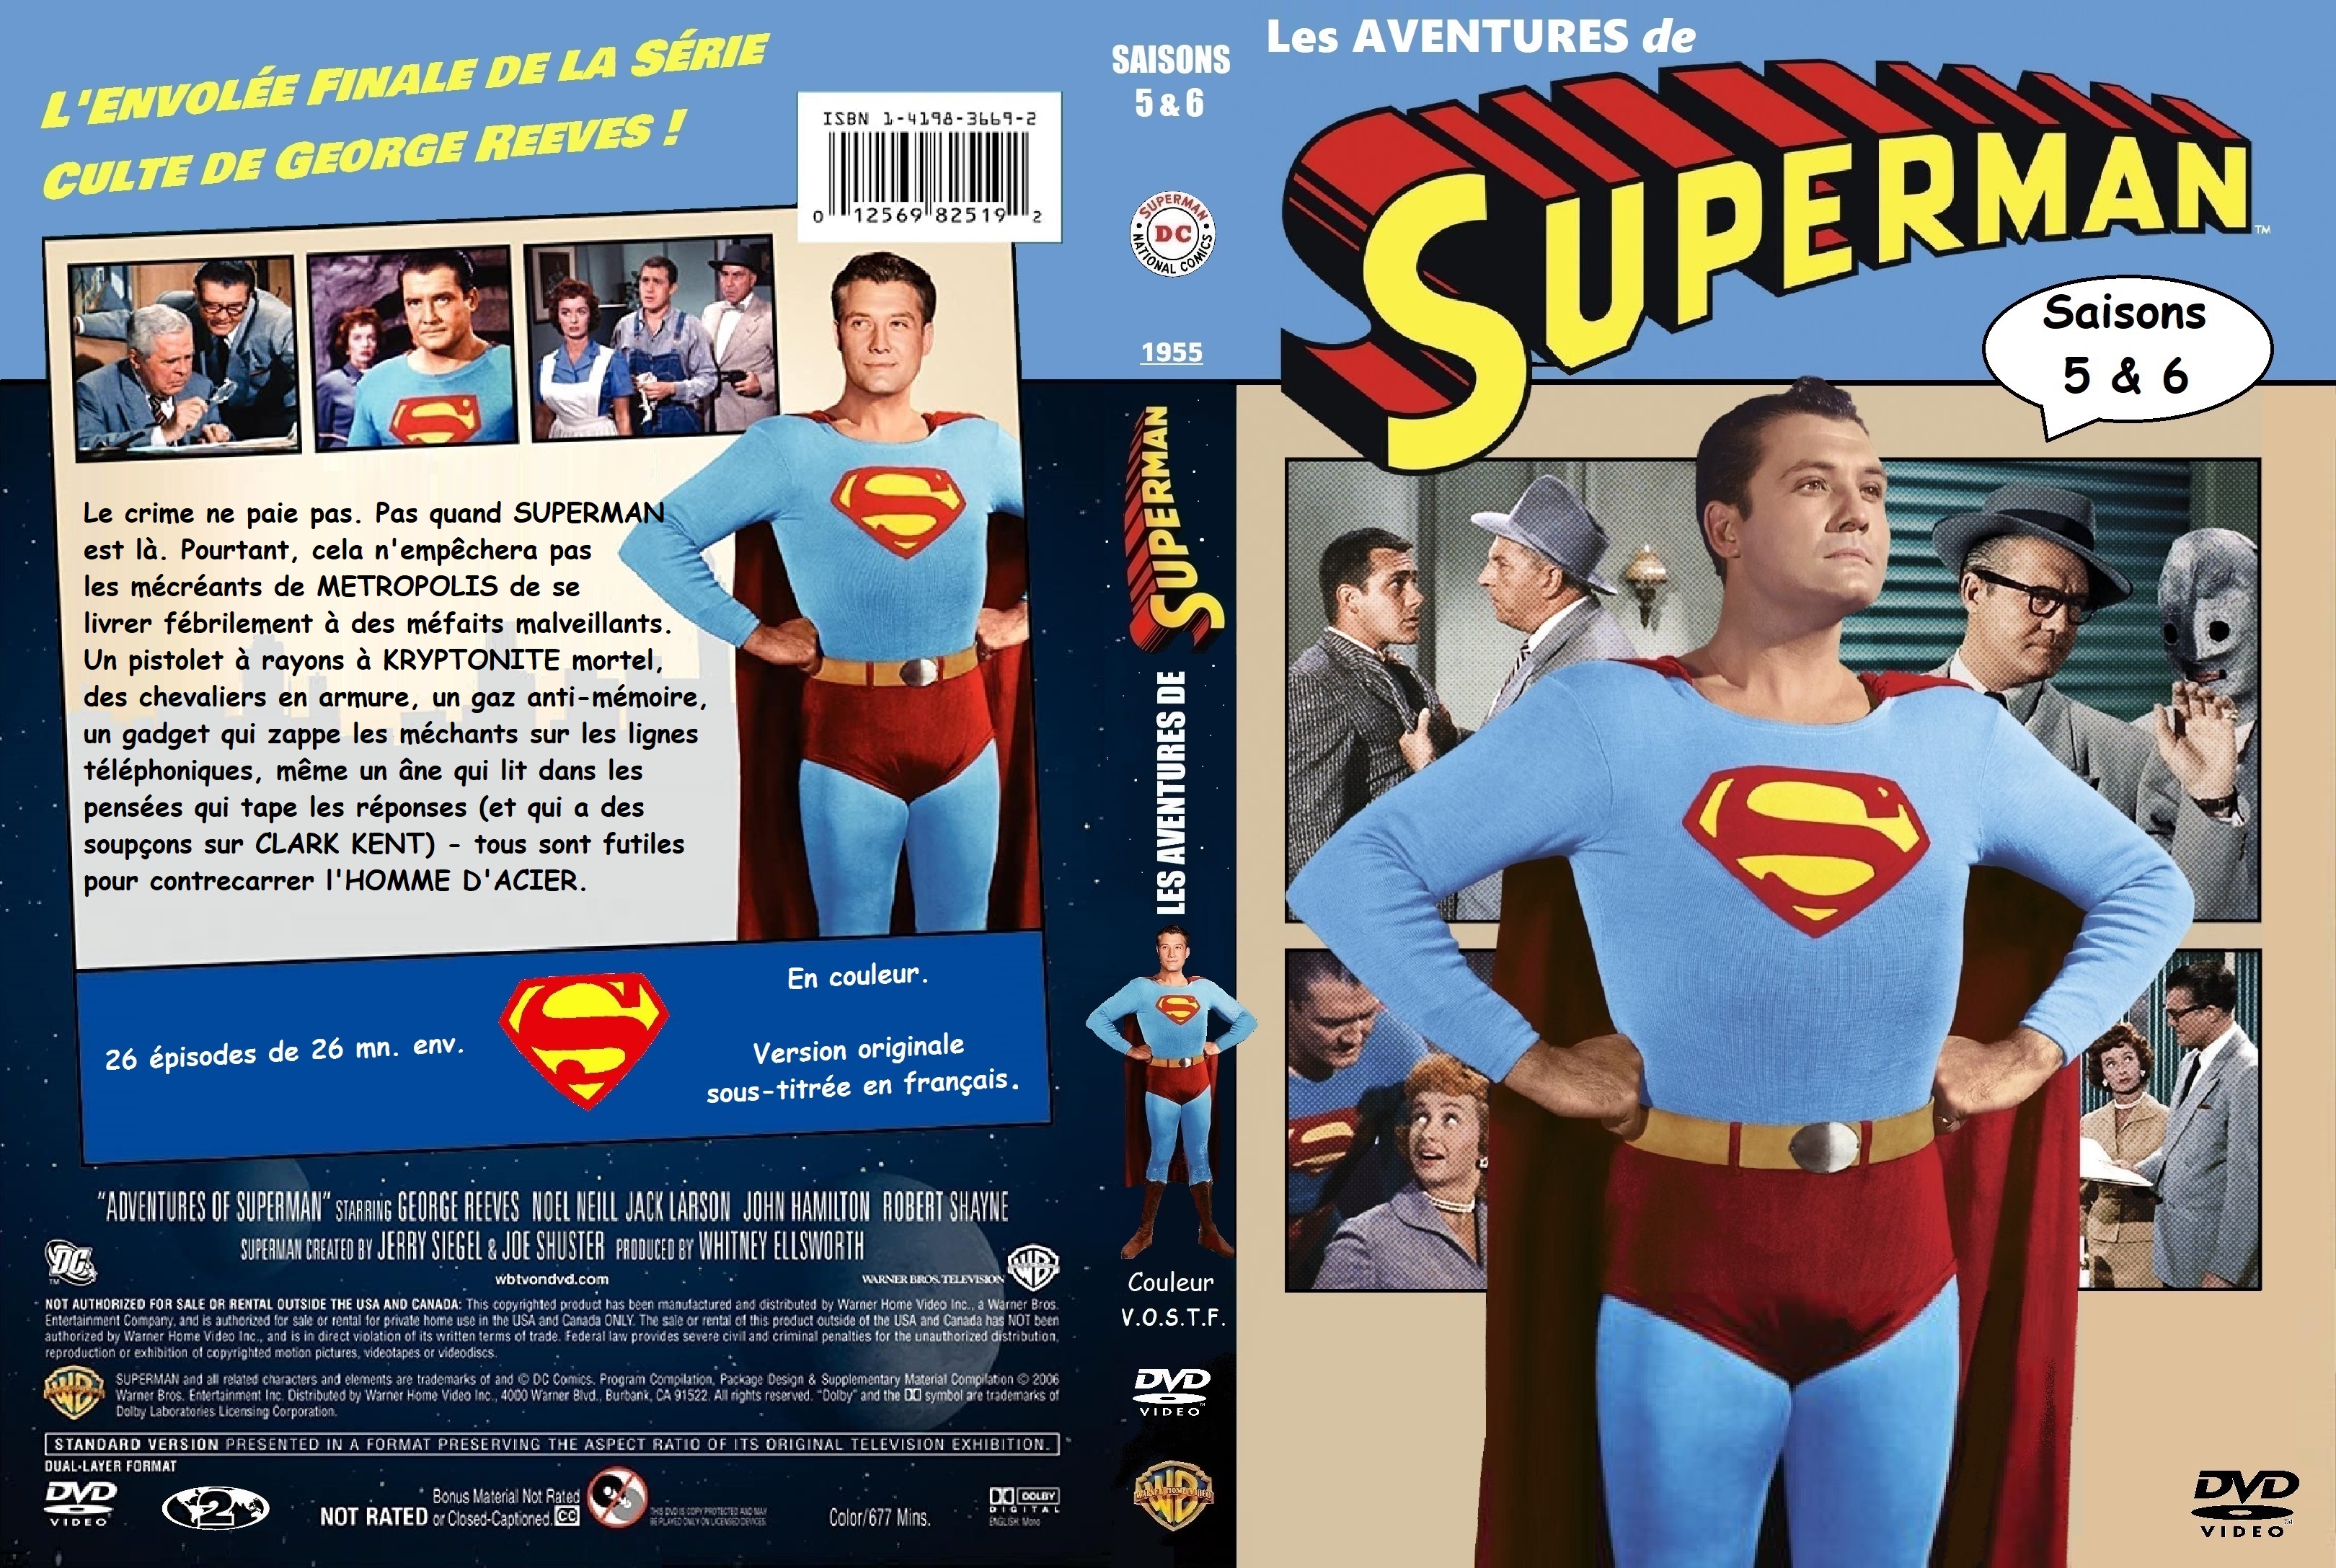 Jaquette DVD Les aventures de Superman saisons  5 & 6(1955) custom